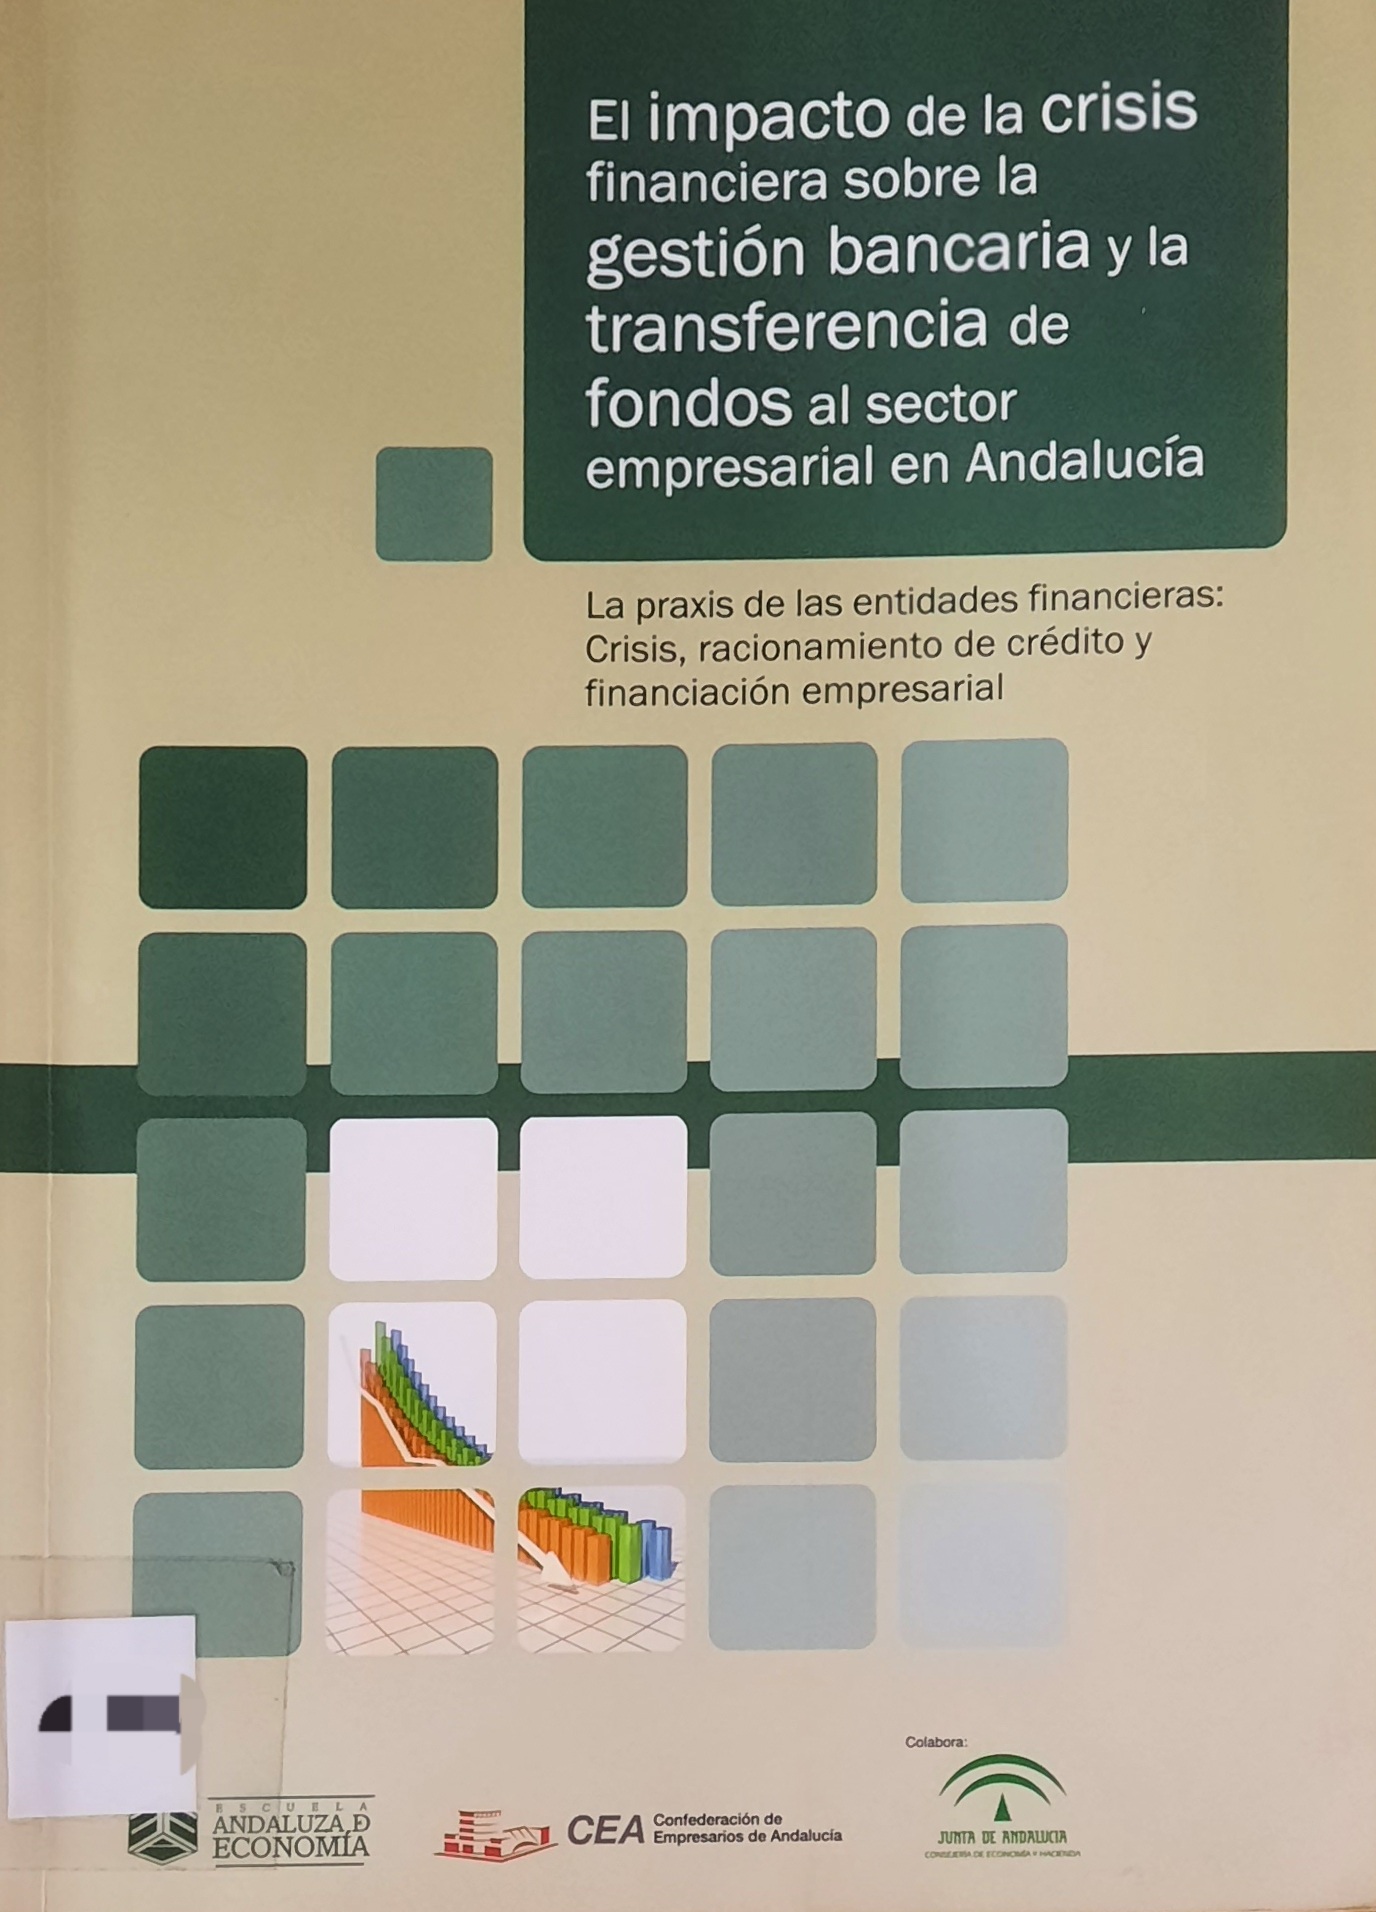 Imagen de portada del libro El impacto de la crisis financiera sobre la gestión bancaria y la transferencia de fondos al sector empresarial en Andalucía.